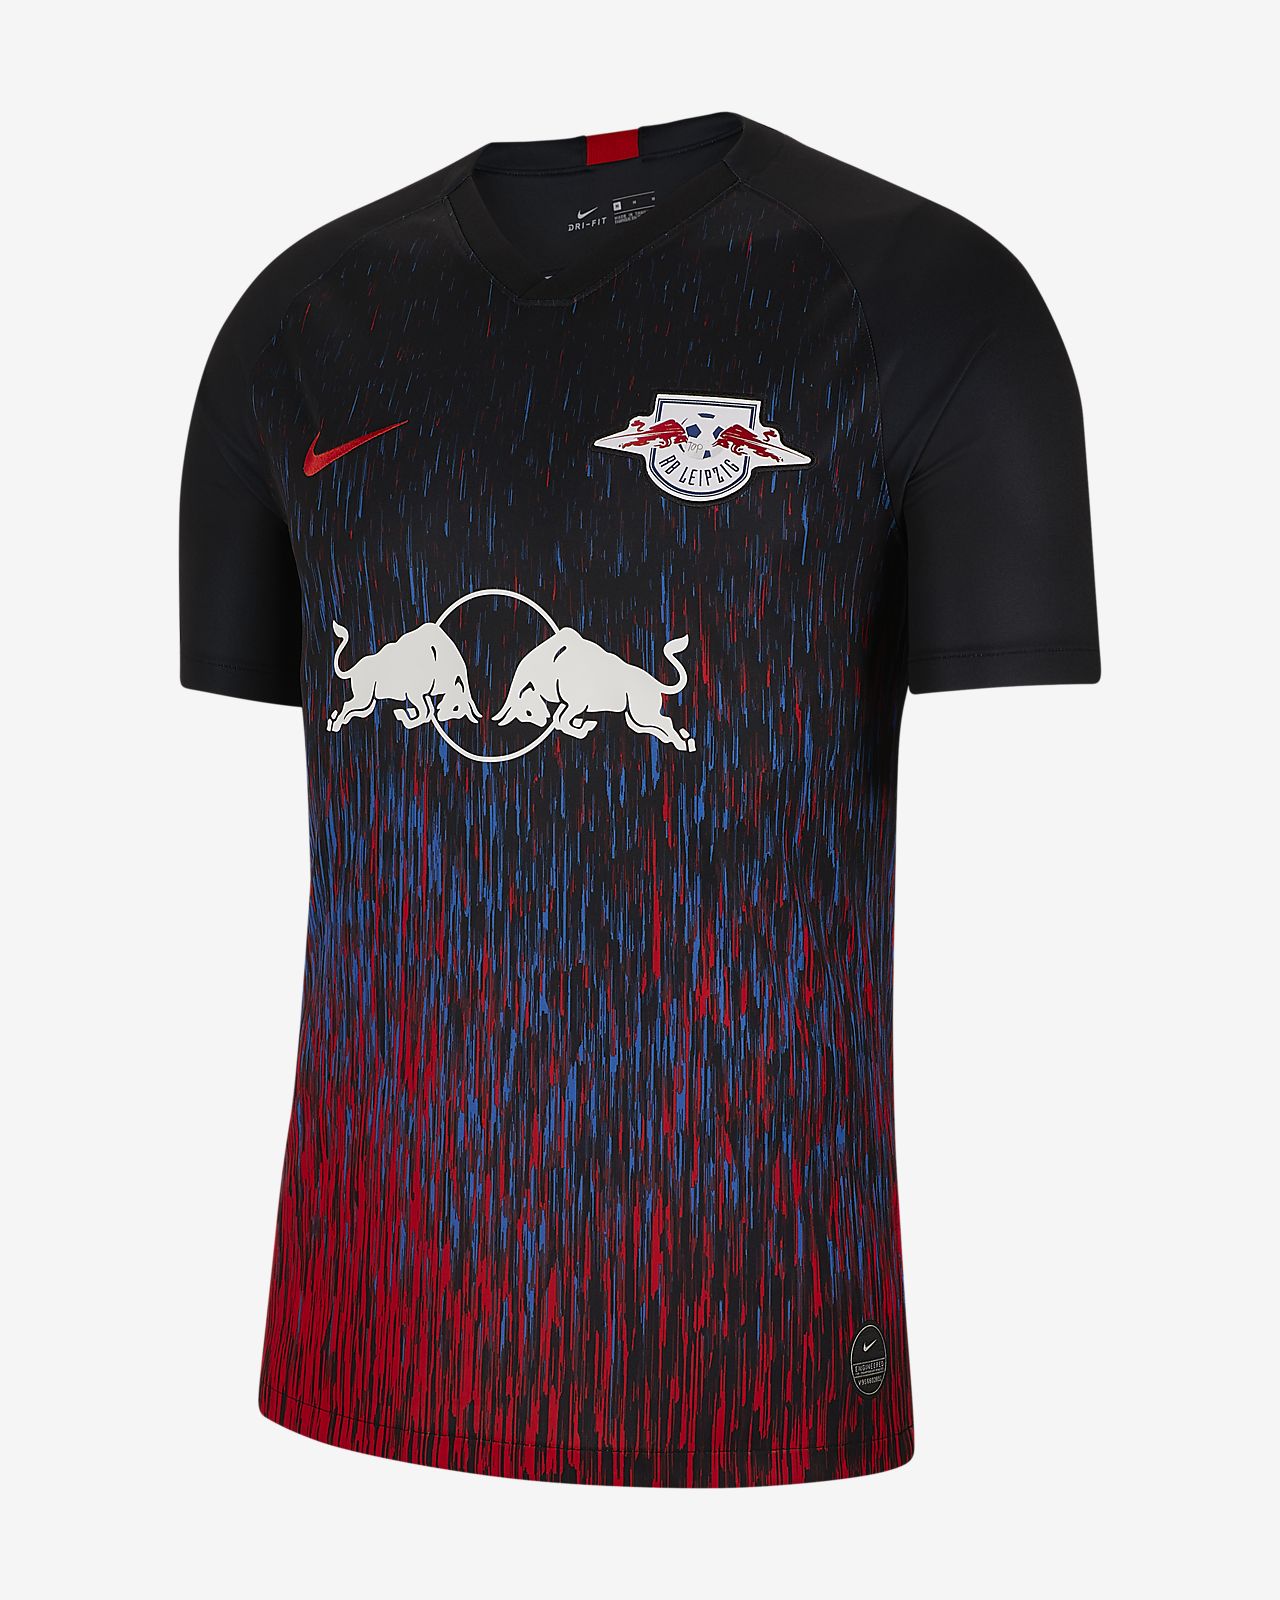 RB Leipzig 2019/20 Nike Third Kit - 19/20 Kits - Football shirt blog